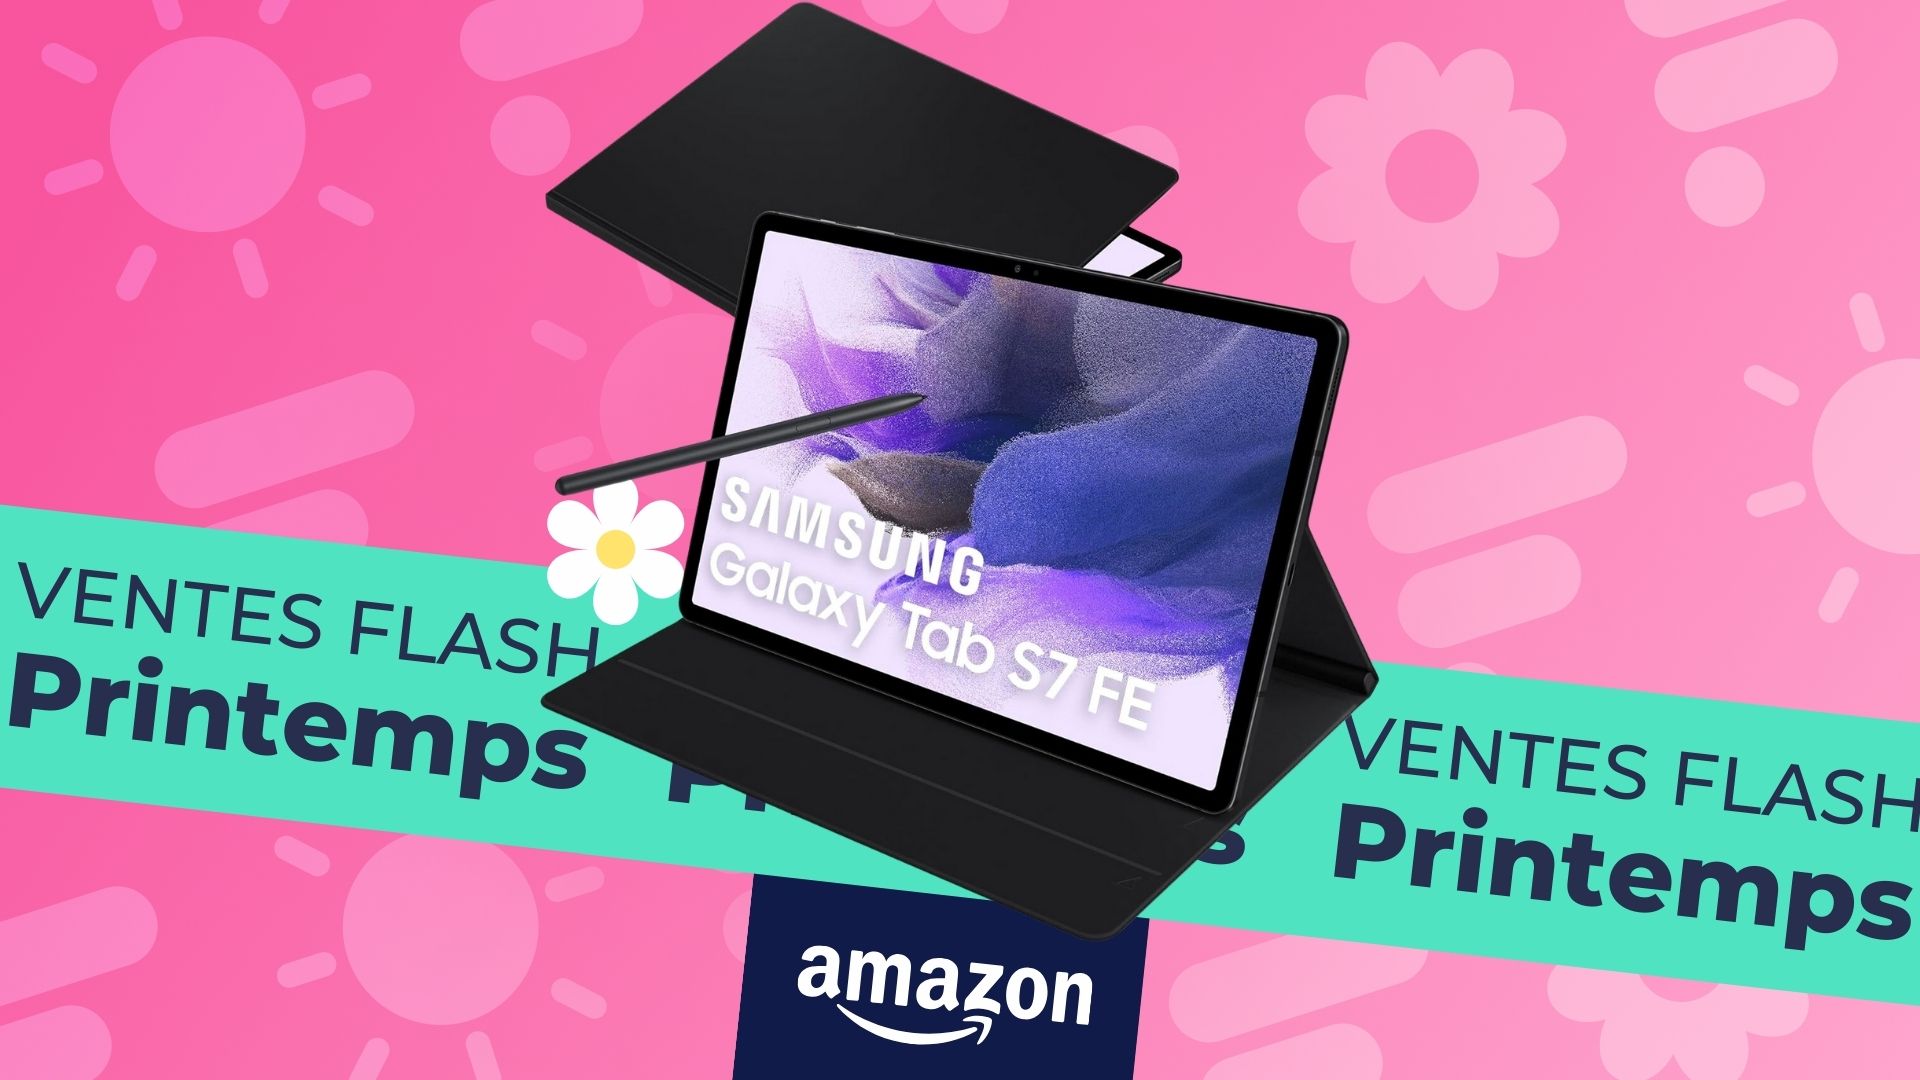 La Samsung Galaxy Tab S7 FE est à moitié prix sur Amazon, et son book cover est offert